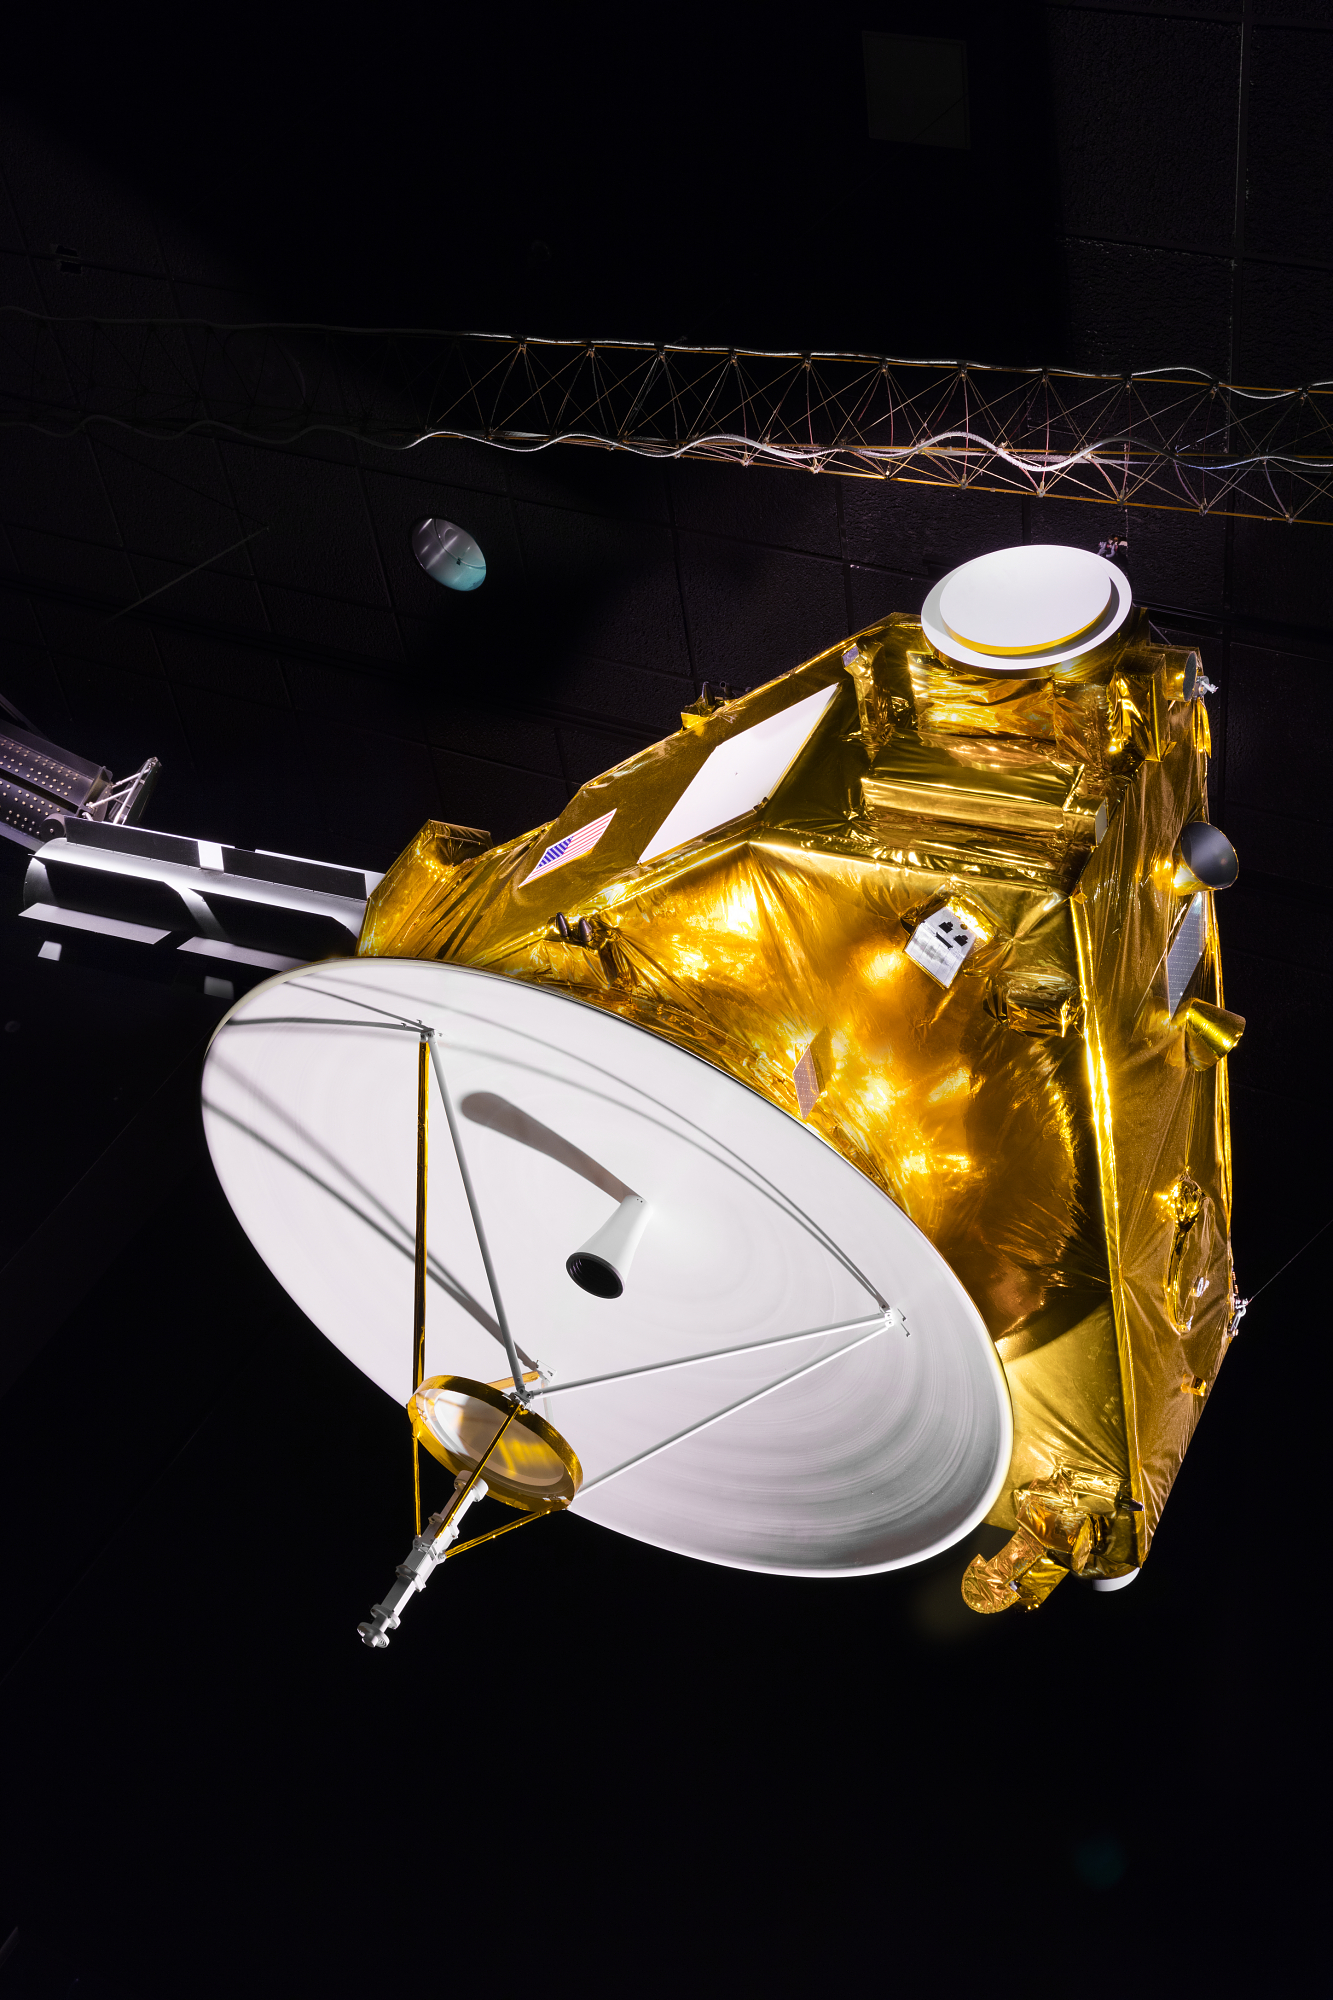 new horizon space probe